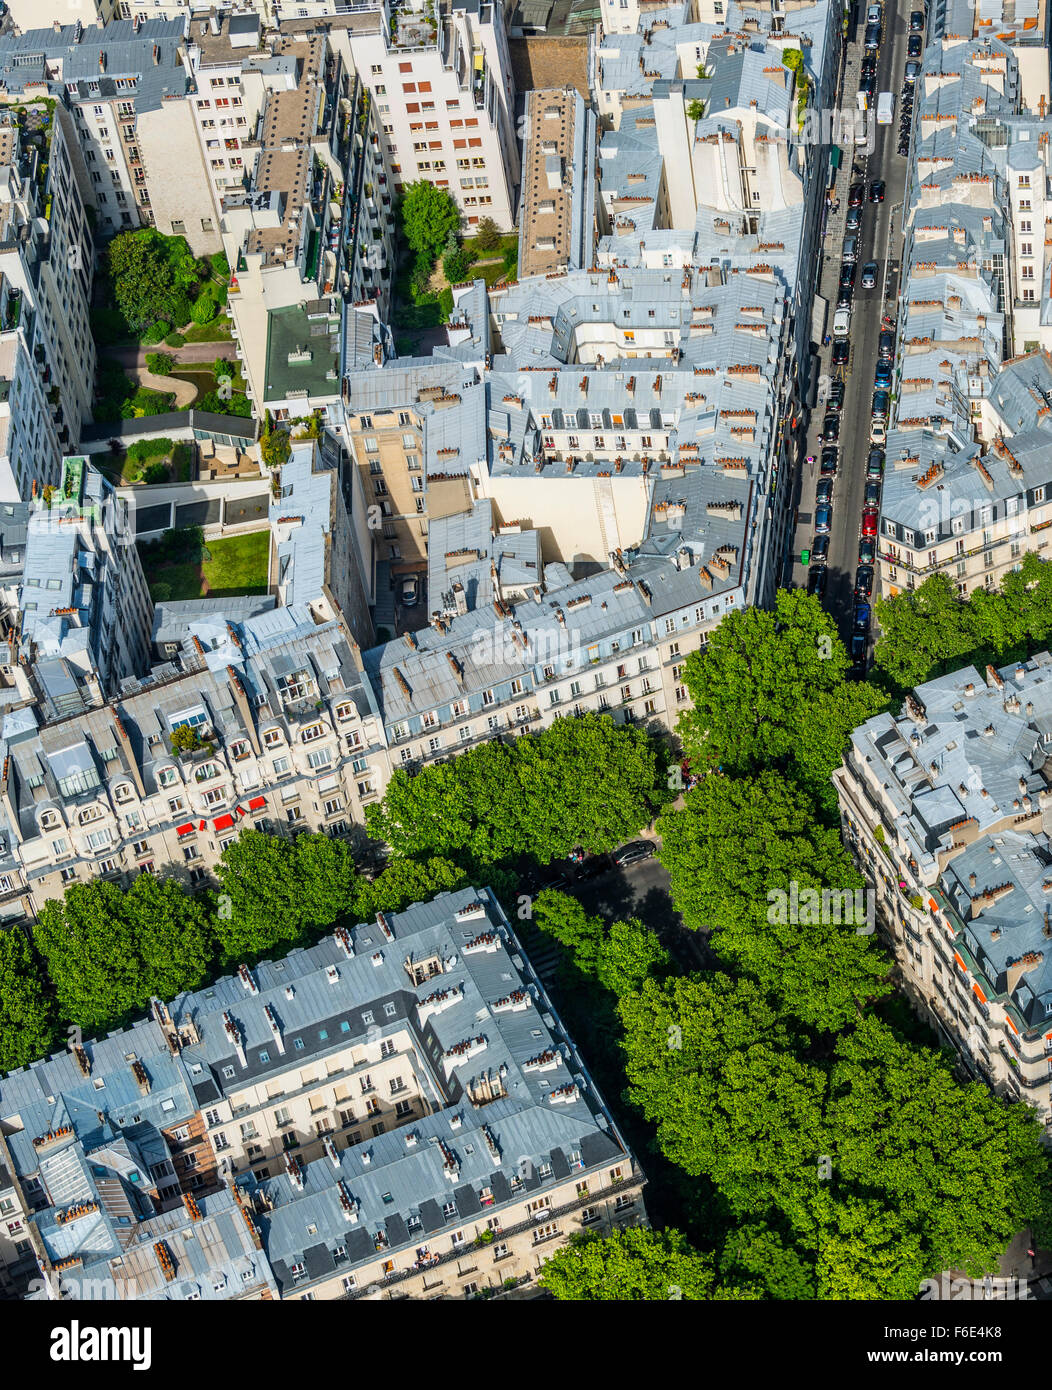 Vue sur les maisons et les rues de la Tour Eiffel, 7ème arrondissement, Paris, Ile-de-France, France Banque D'Images